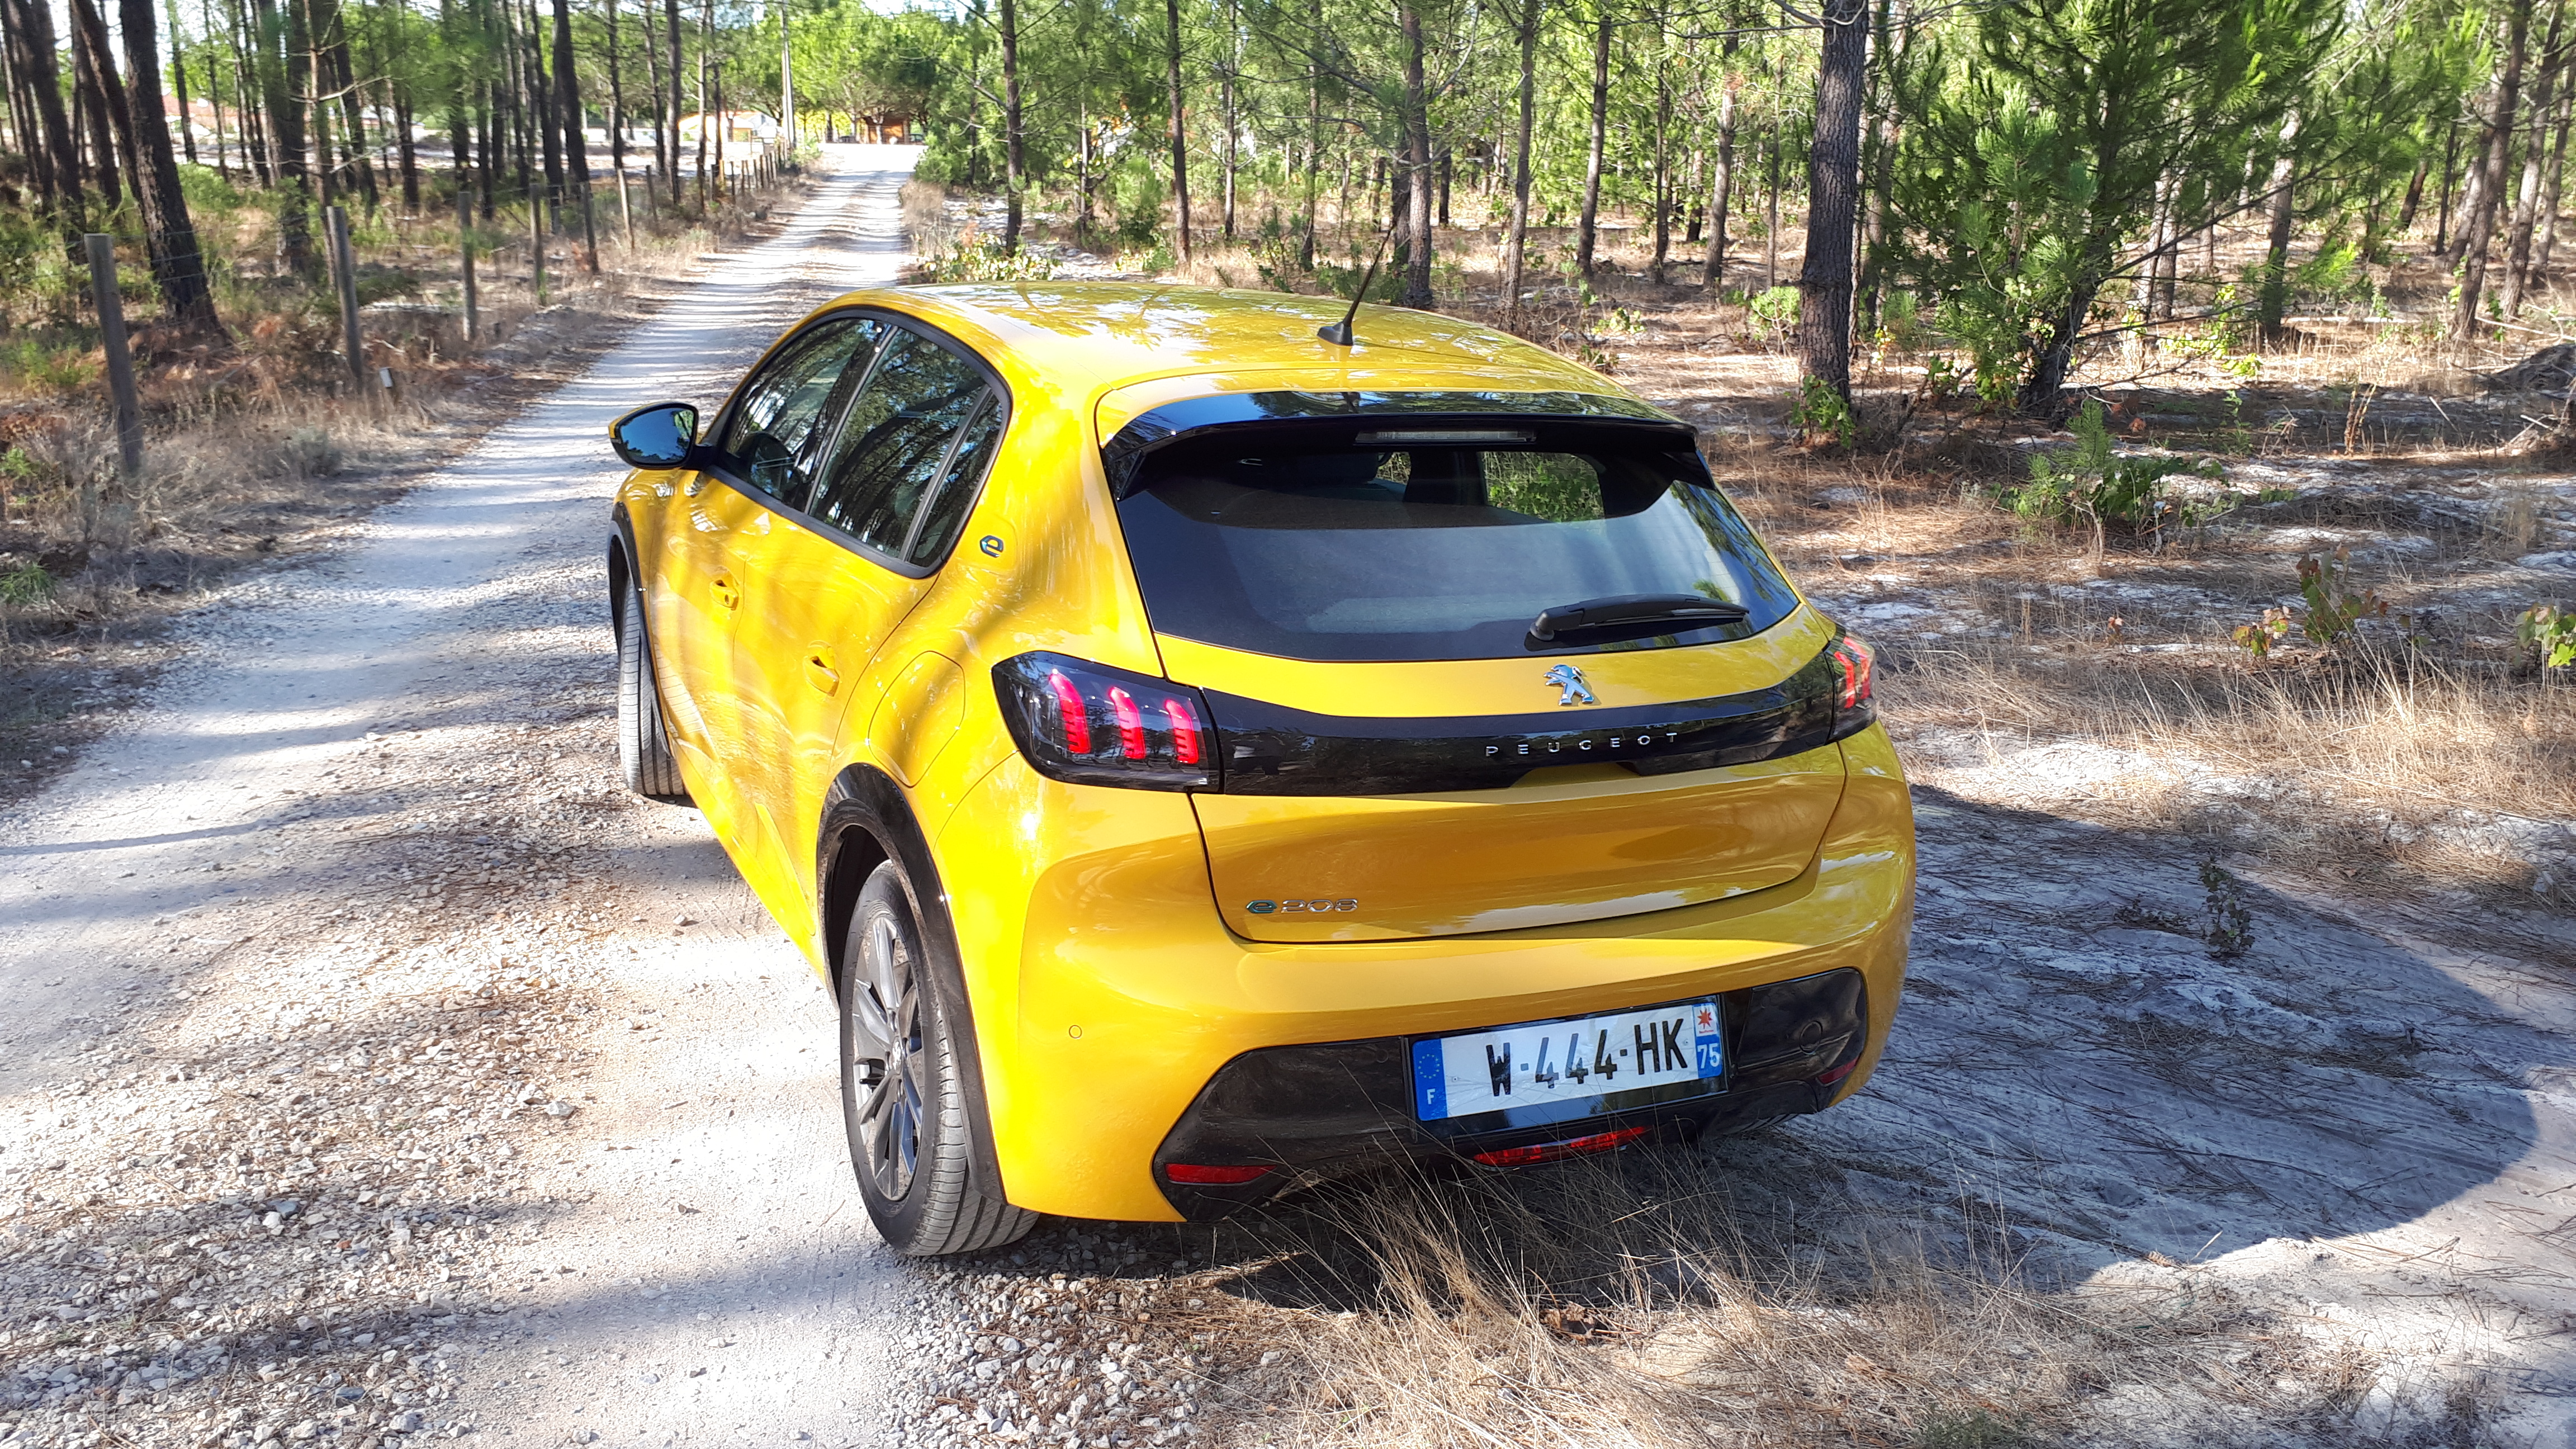 Opel Mokka électrique - Essai détaillé - De la douceur sous un style  ravageur